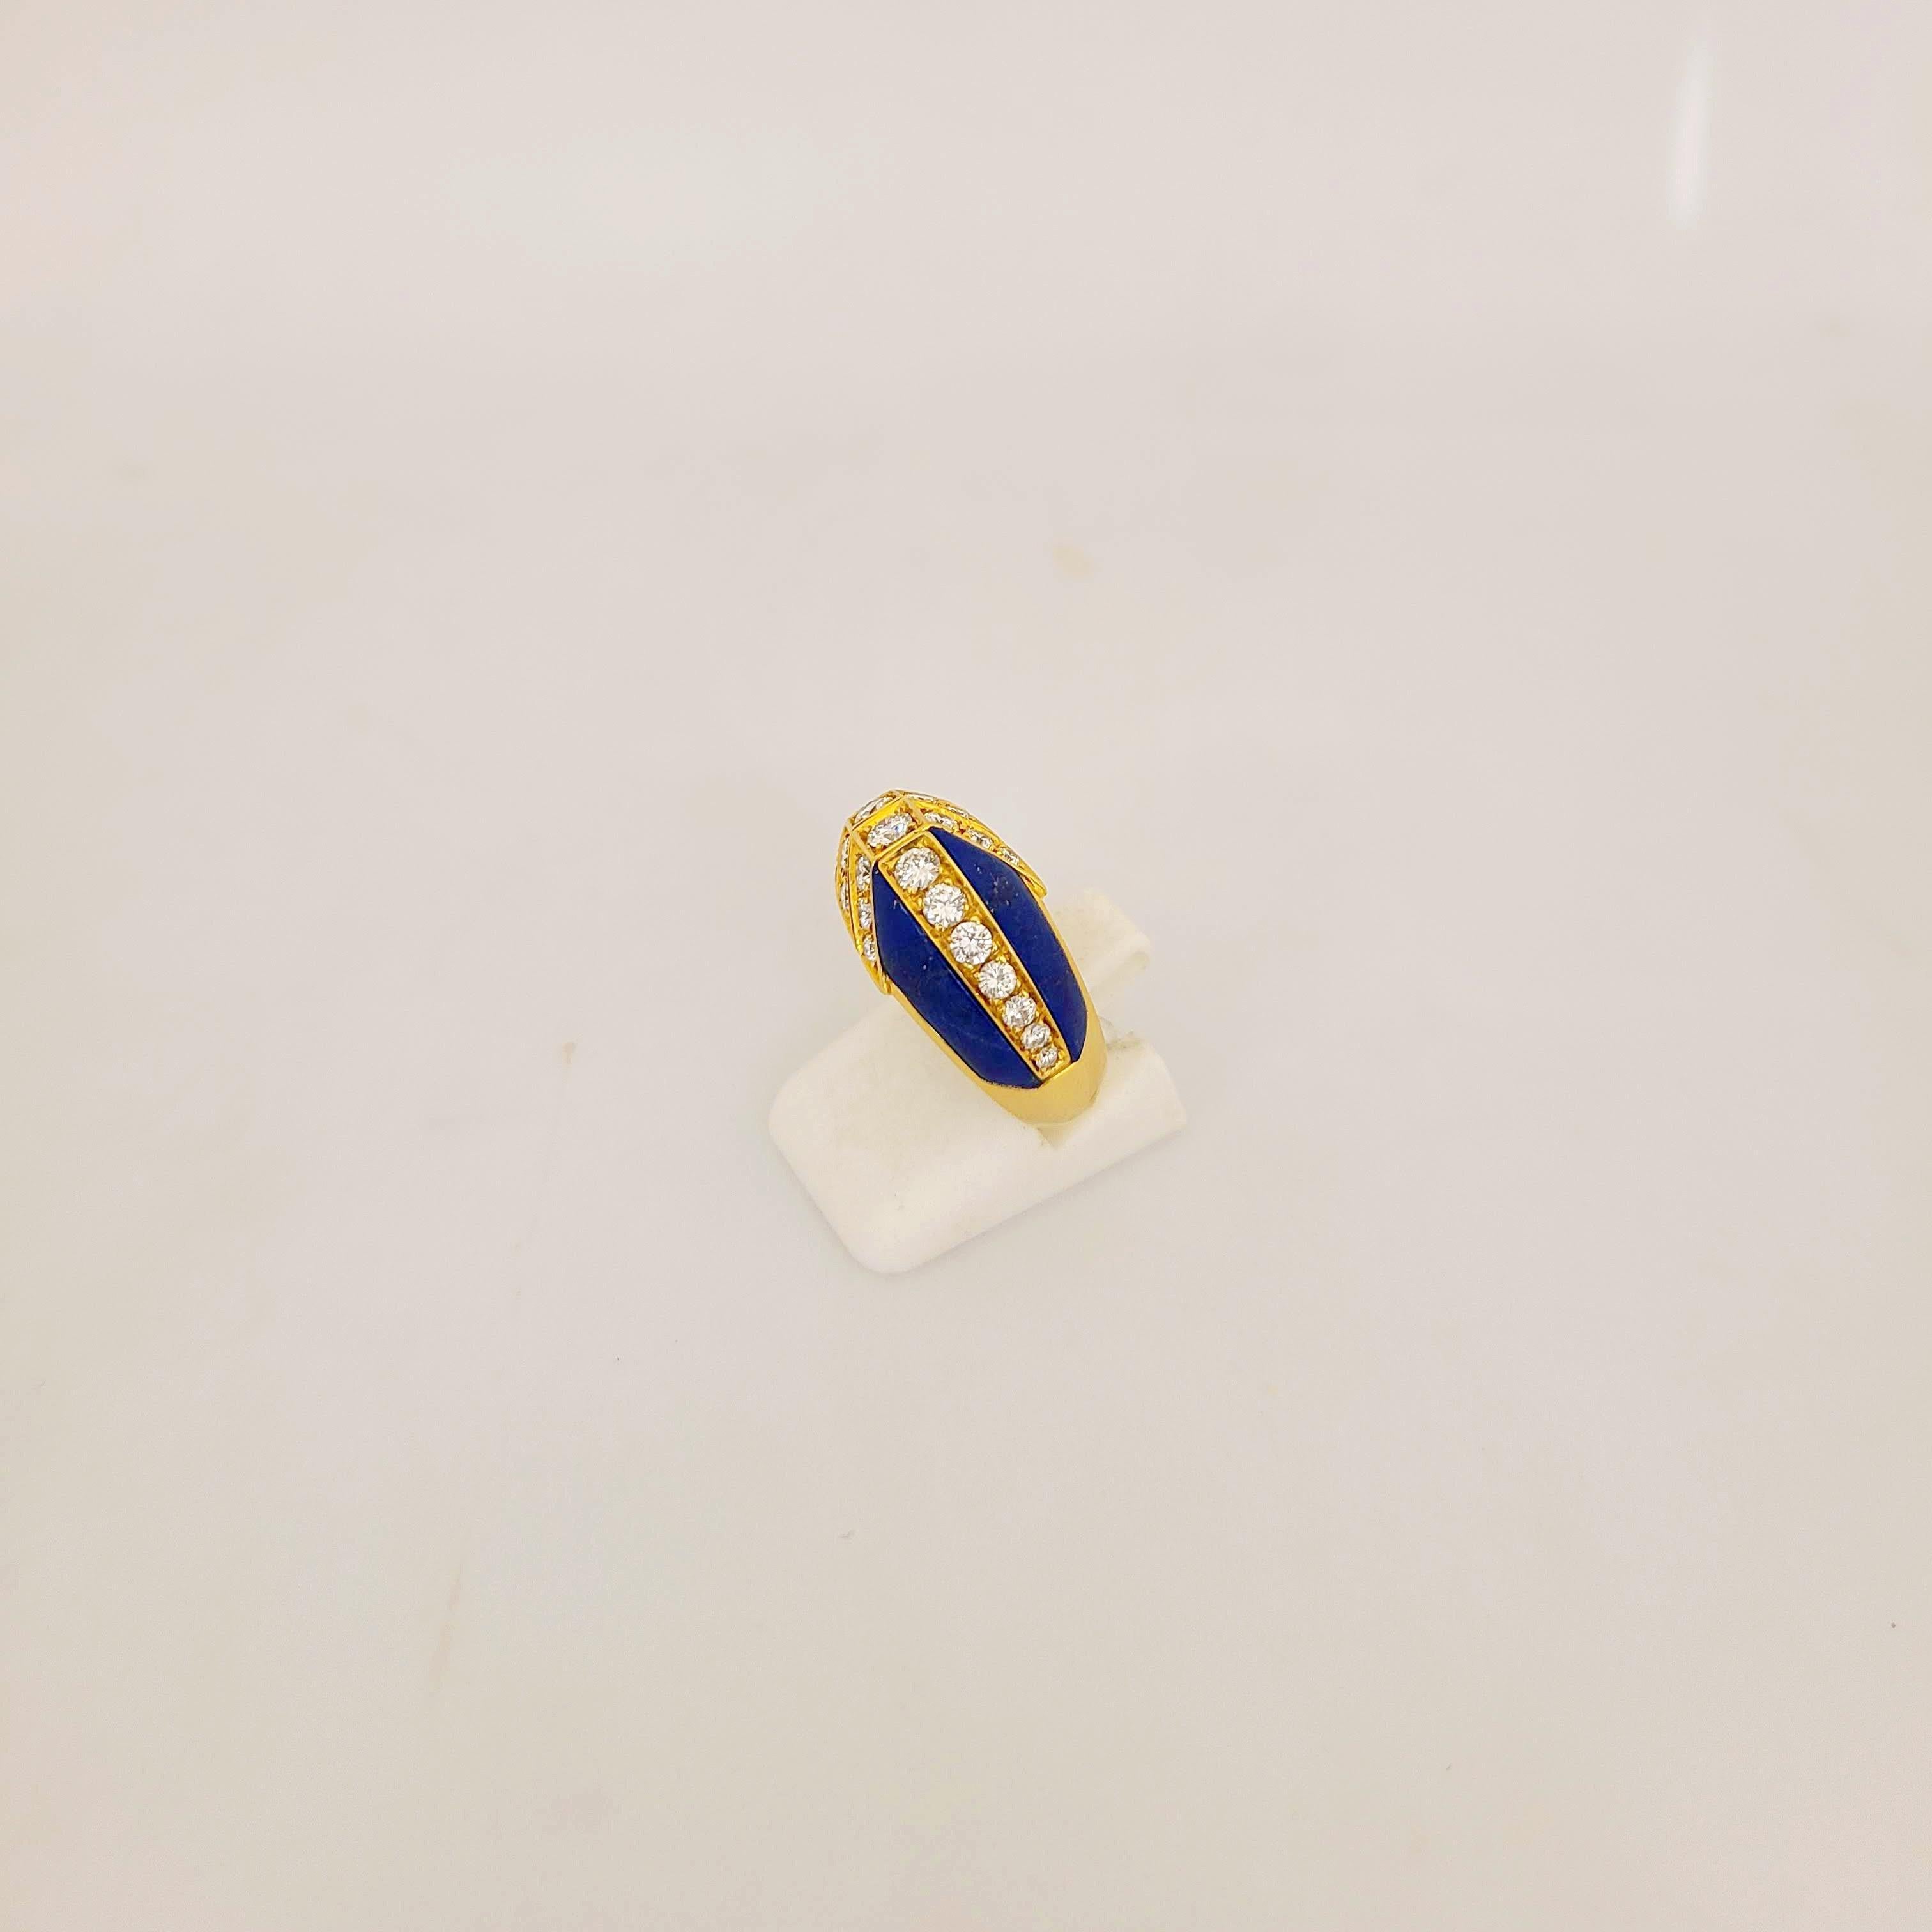 Entworfen von Giuseppe Picchiotti, dem Meister des Handwerks. Cellini NYC präsentiert diesen Ring aus 18 Karat Gelbgold, der mit runden Brillanten besetzt ist und mit Lapislazuli-Abschnitten akzentuiert ist.
Gesamtgewicht des Diamanten 0,91